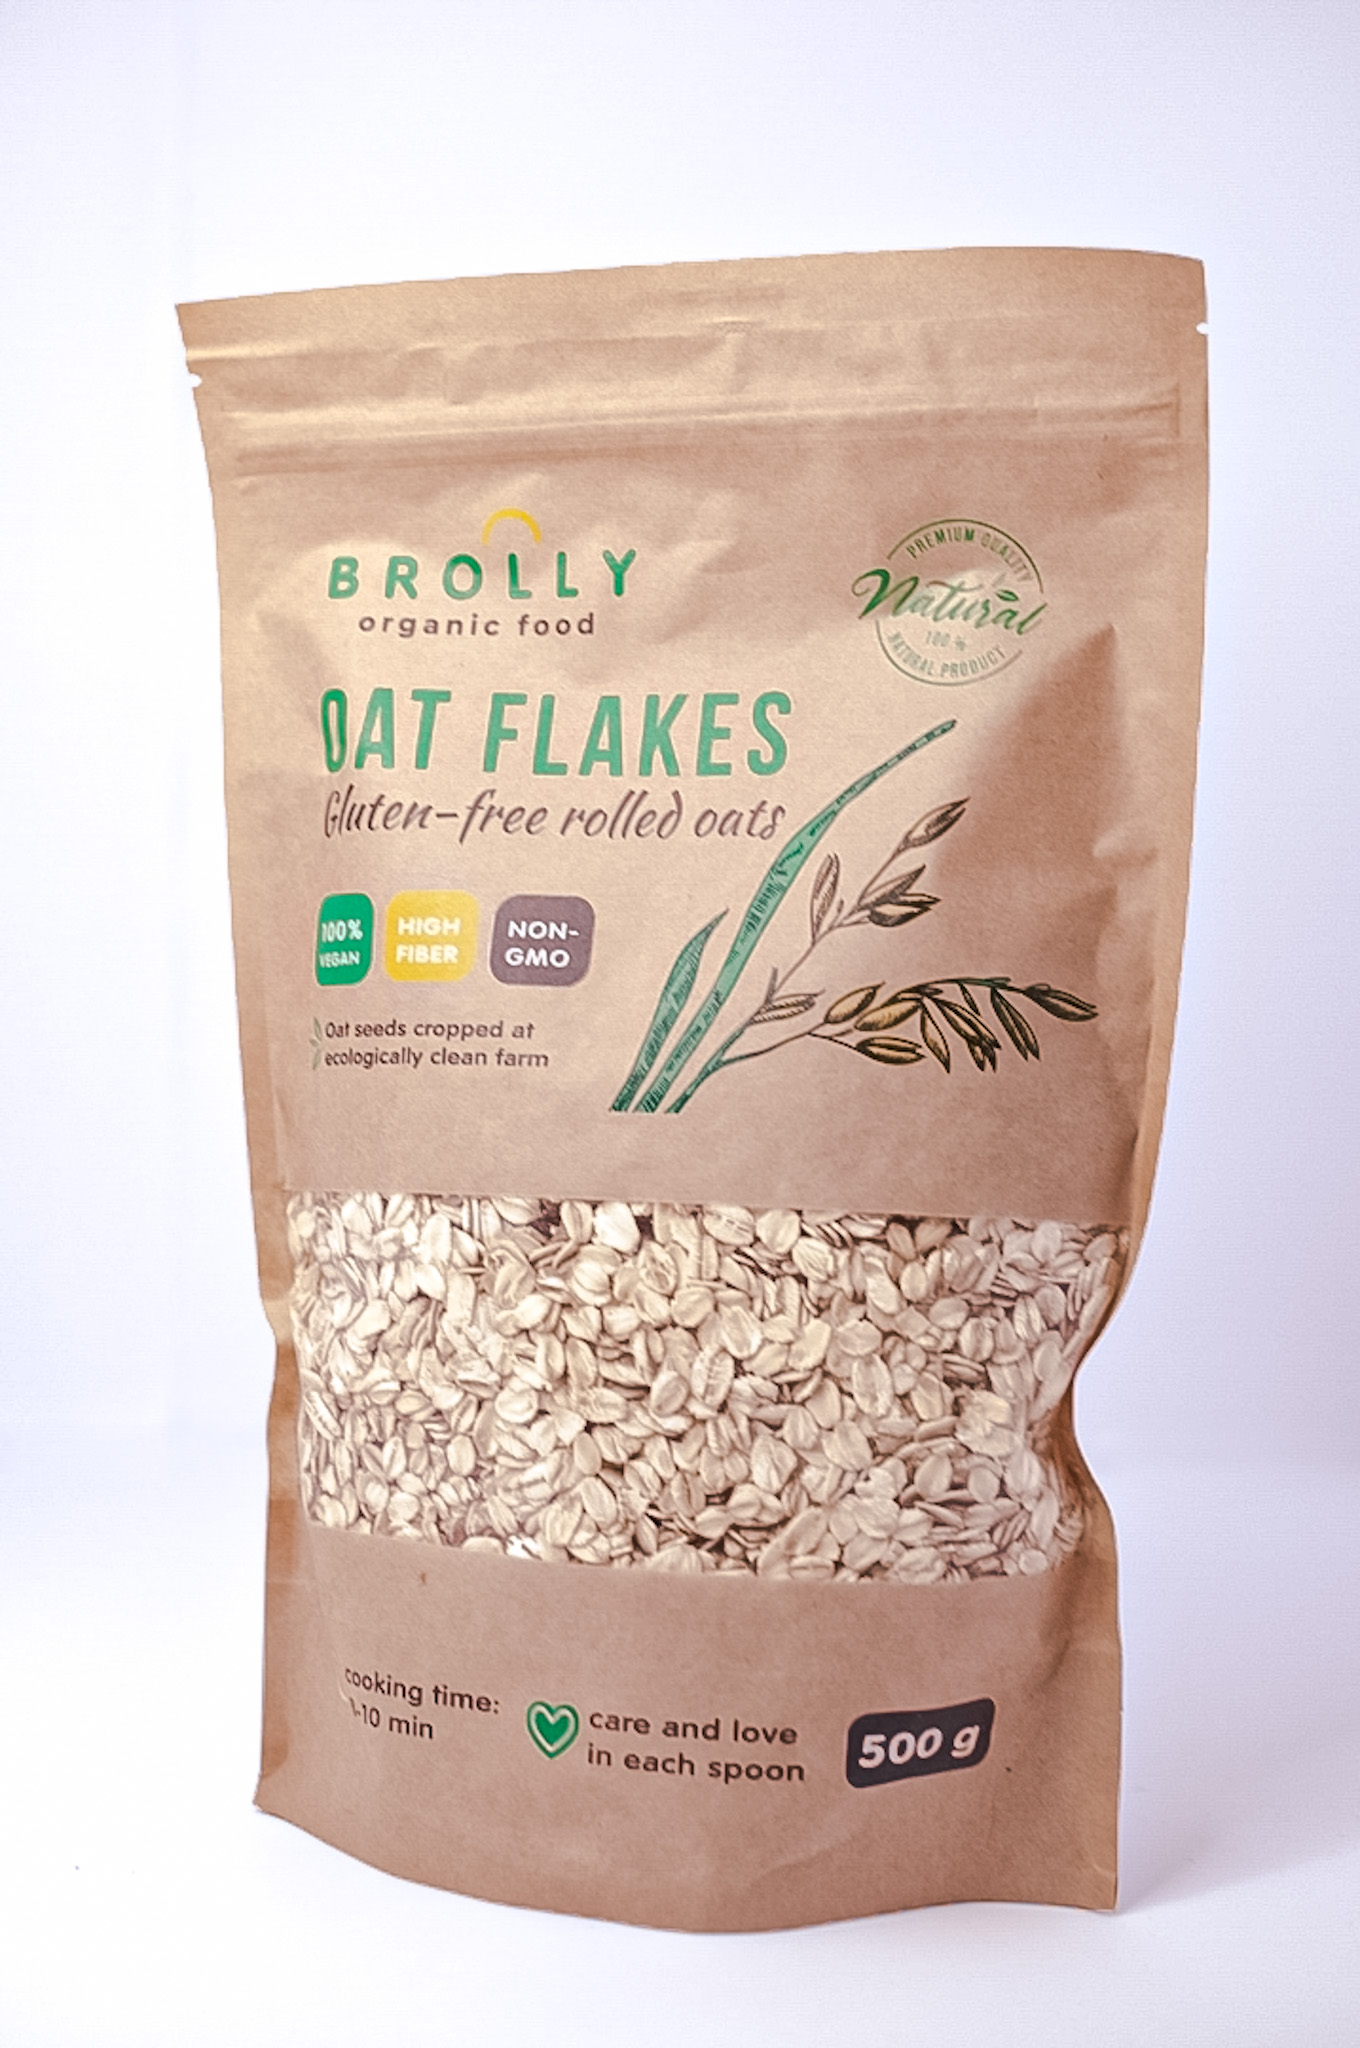 Oat flakes - gluten free rolled oats